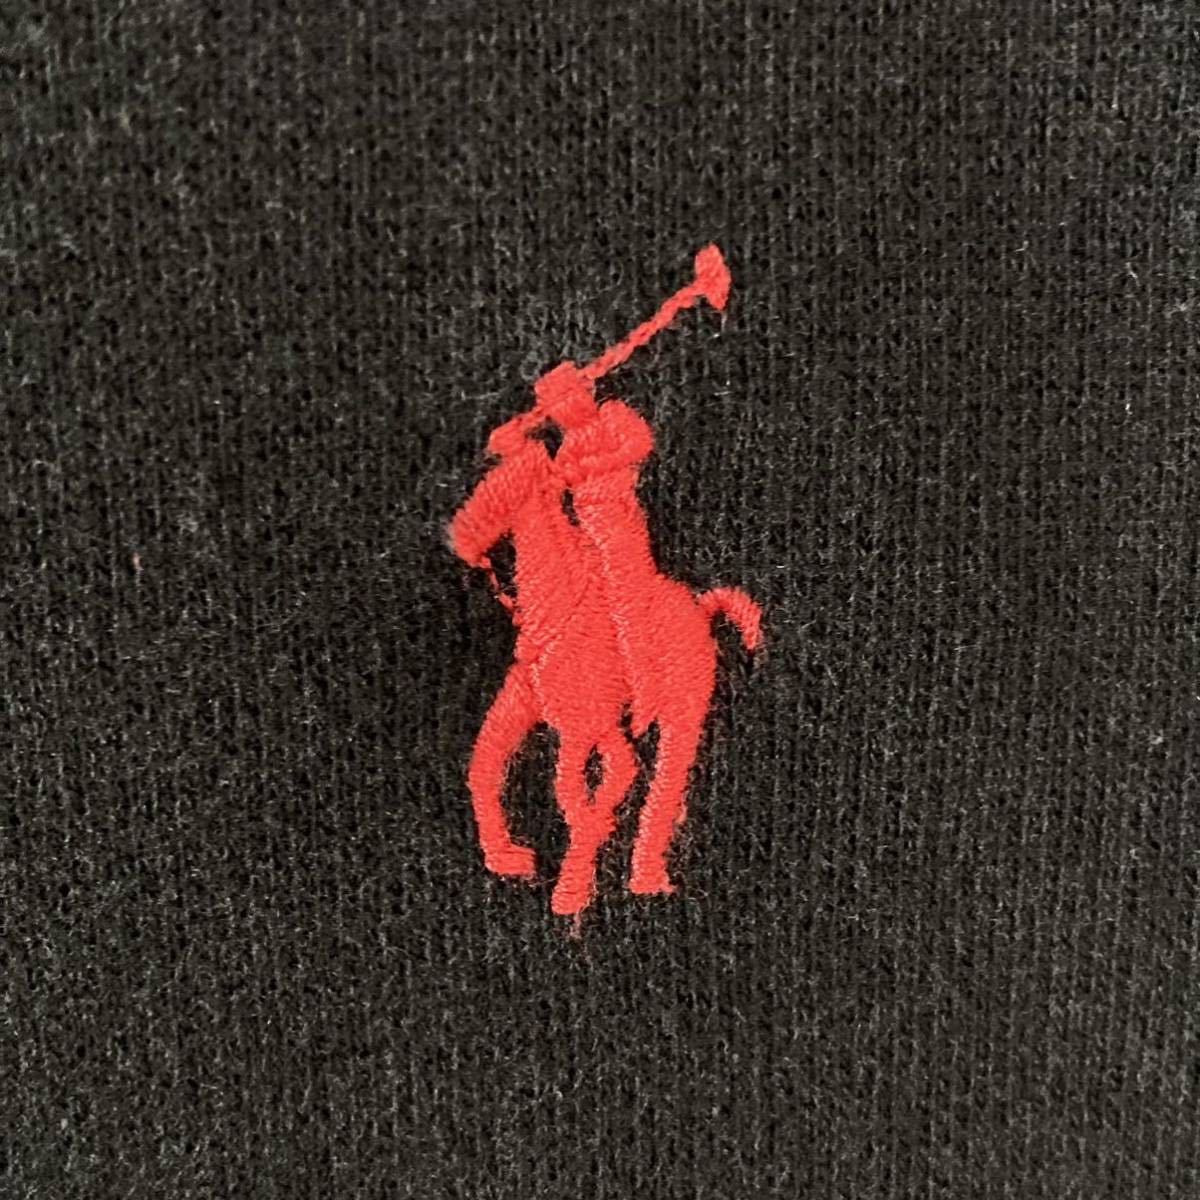  Ralph Lauren Logo вышивка черный one отметка Logo futoshi arm 560 тренировочный футболка Polo длинный рукав tops RALPH LAUREN б/у одежда 